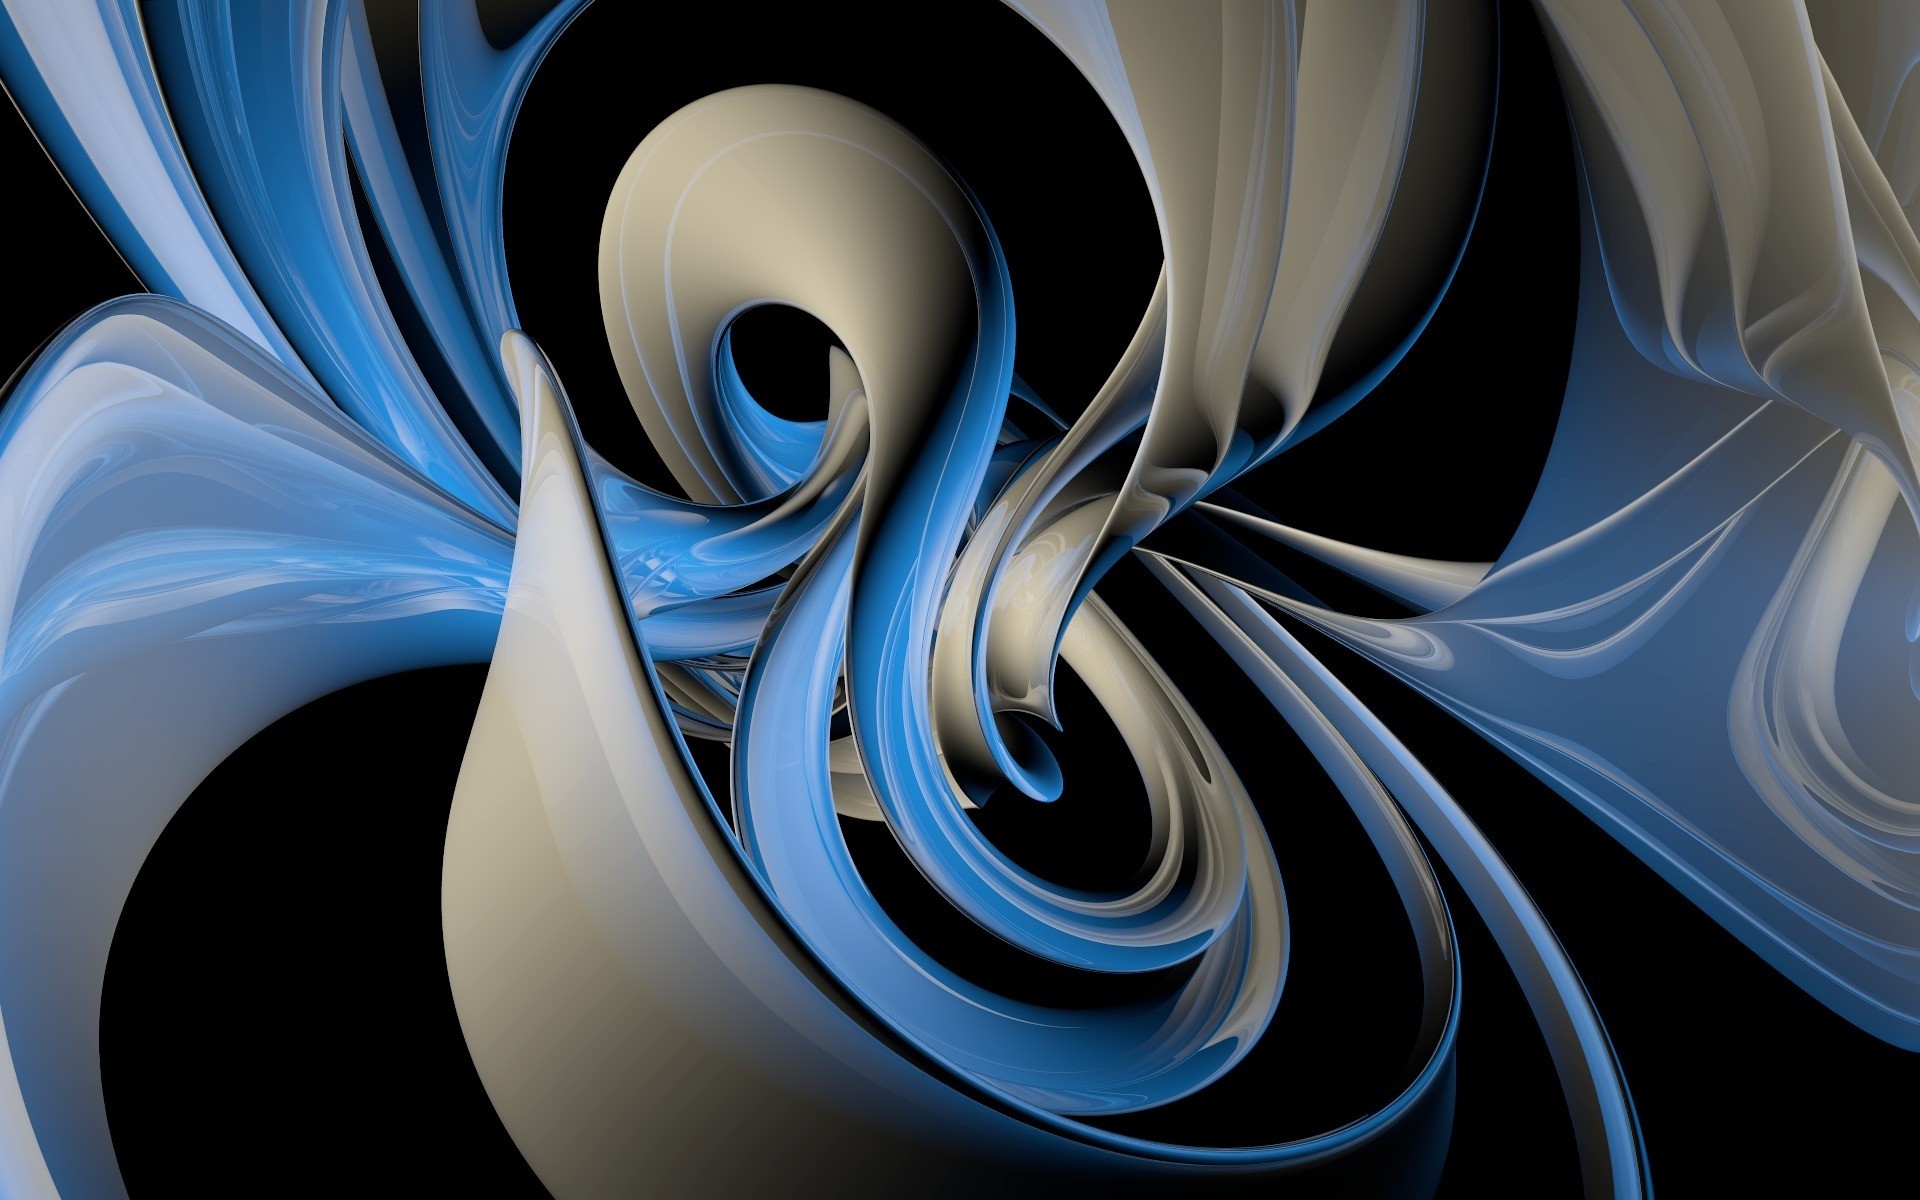 абстракция кривая волна график фрактал дизайн иллюстрация линия динамические искусство обои фон рабочего стола технология геометрия современные фантастический движения фантазия формы